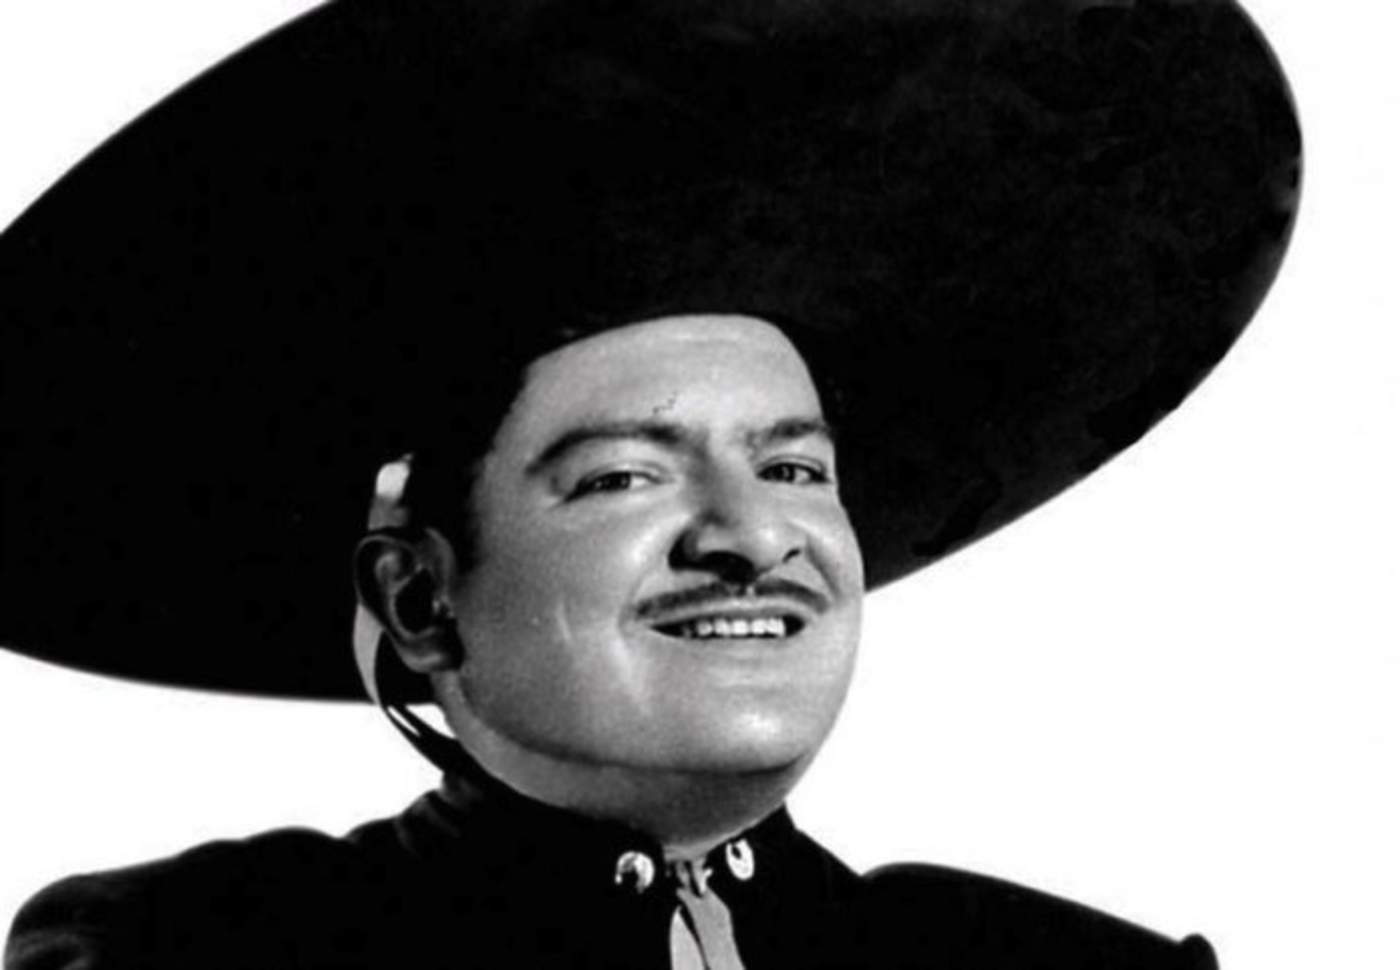 1926: Nace José Alfredo Jiménez, afamado cantante y compositor mexicano